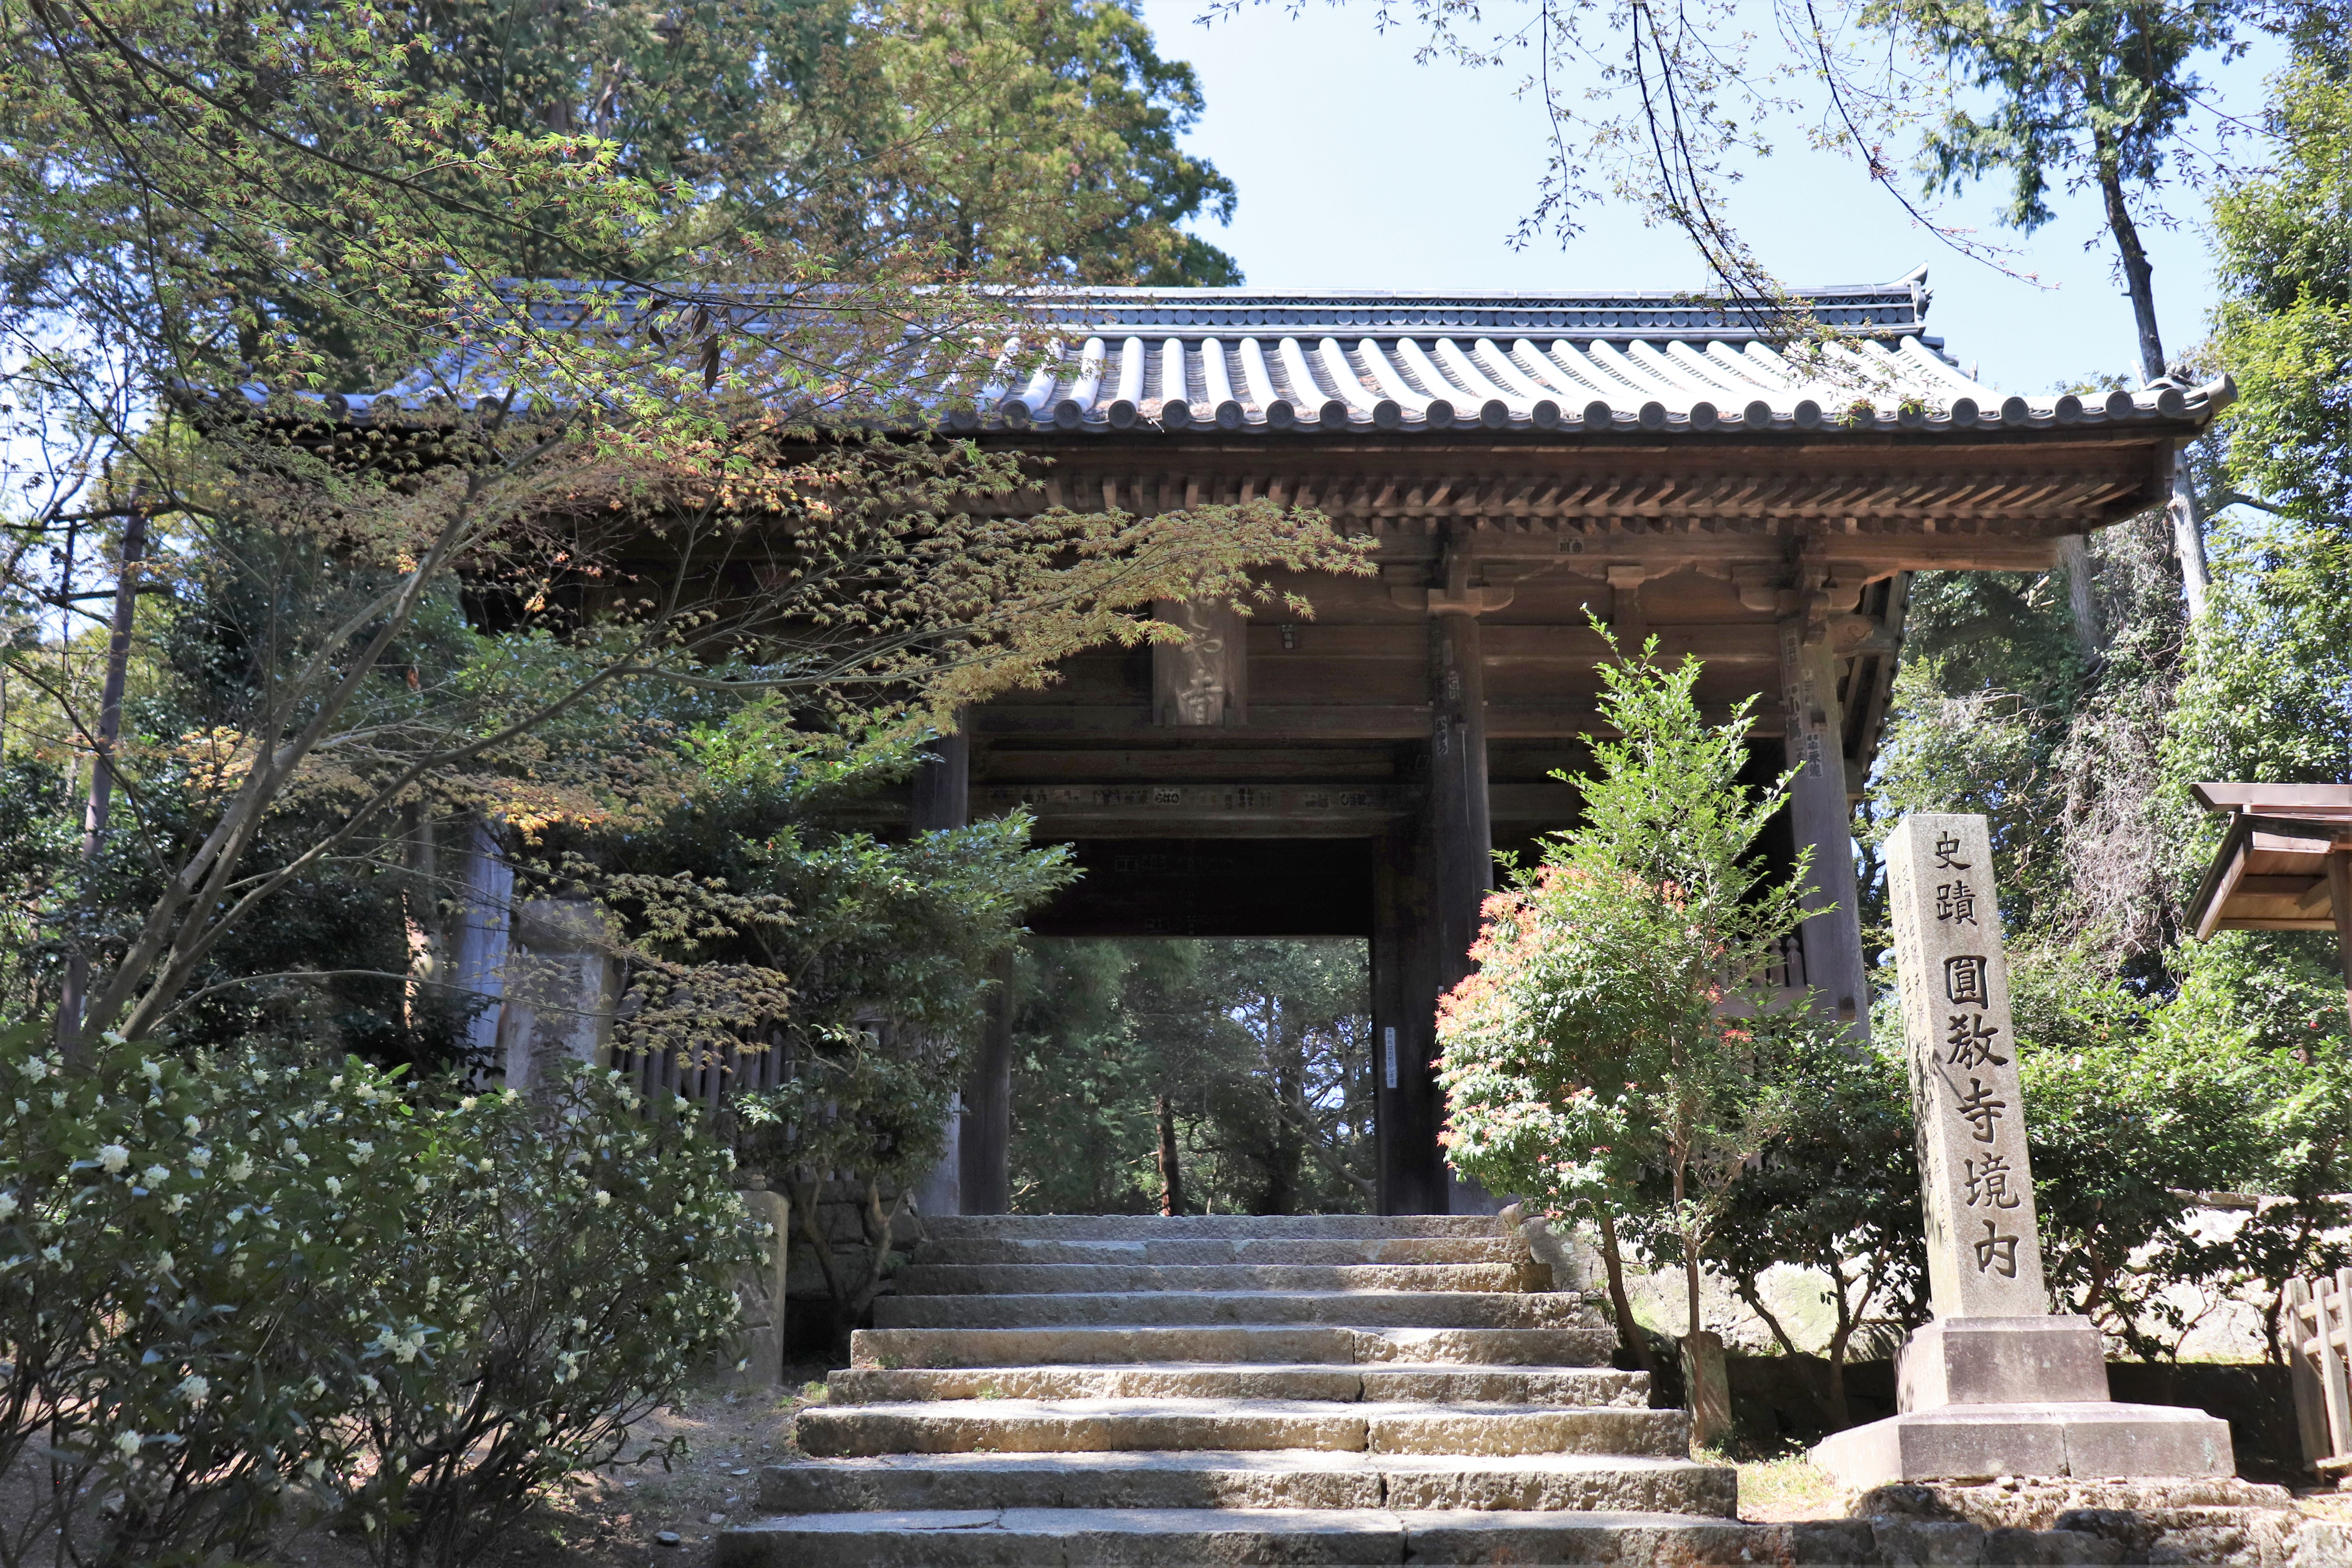 Niomon gate of Engyo-ji Temple